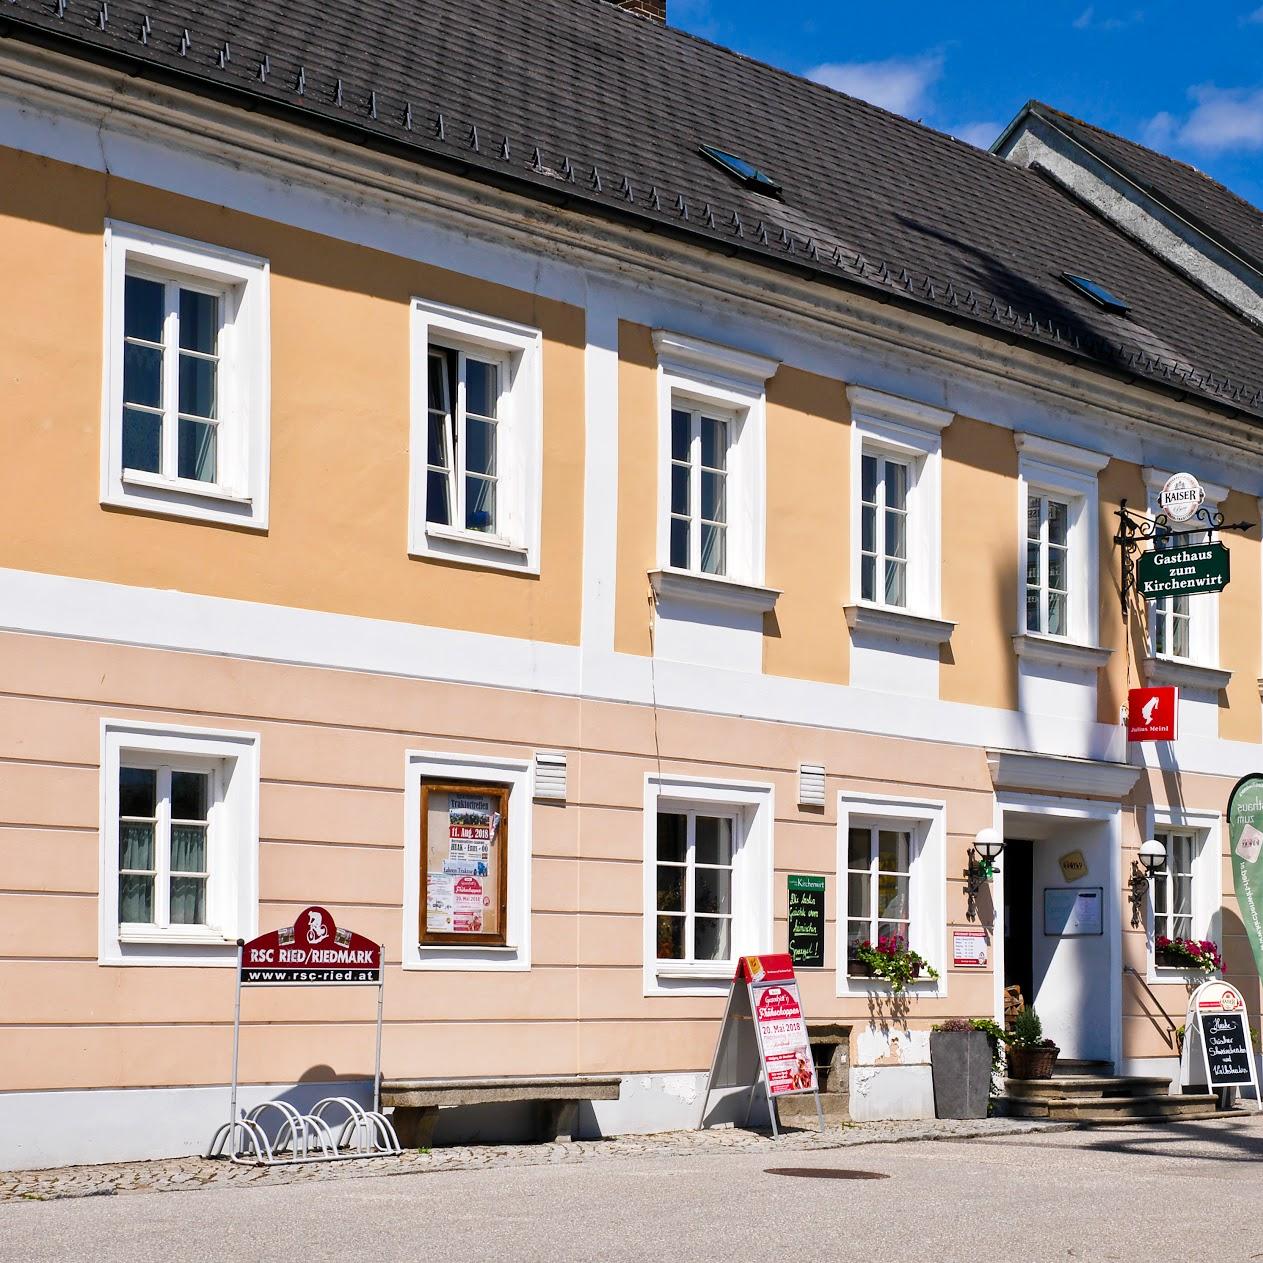 Restaurant "Gasthaus zum Kirchenwirt" in Ried in der Riedmark